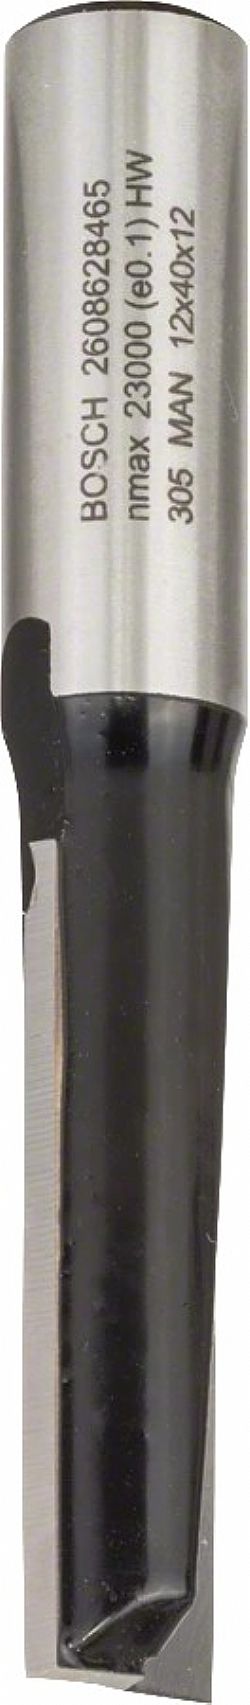 Κοπτικό Ρούτερ Μακριά Φρέζα Αυλακώσεων Δίκοπη 12mm (D)12.0mm/(L)-40.0mm Σκληρομέταλλο BOSCH